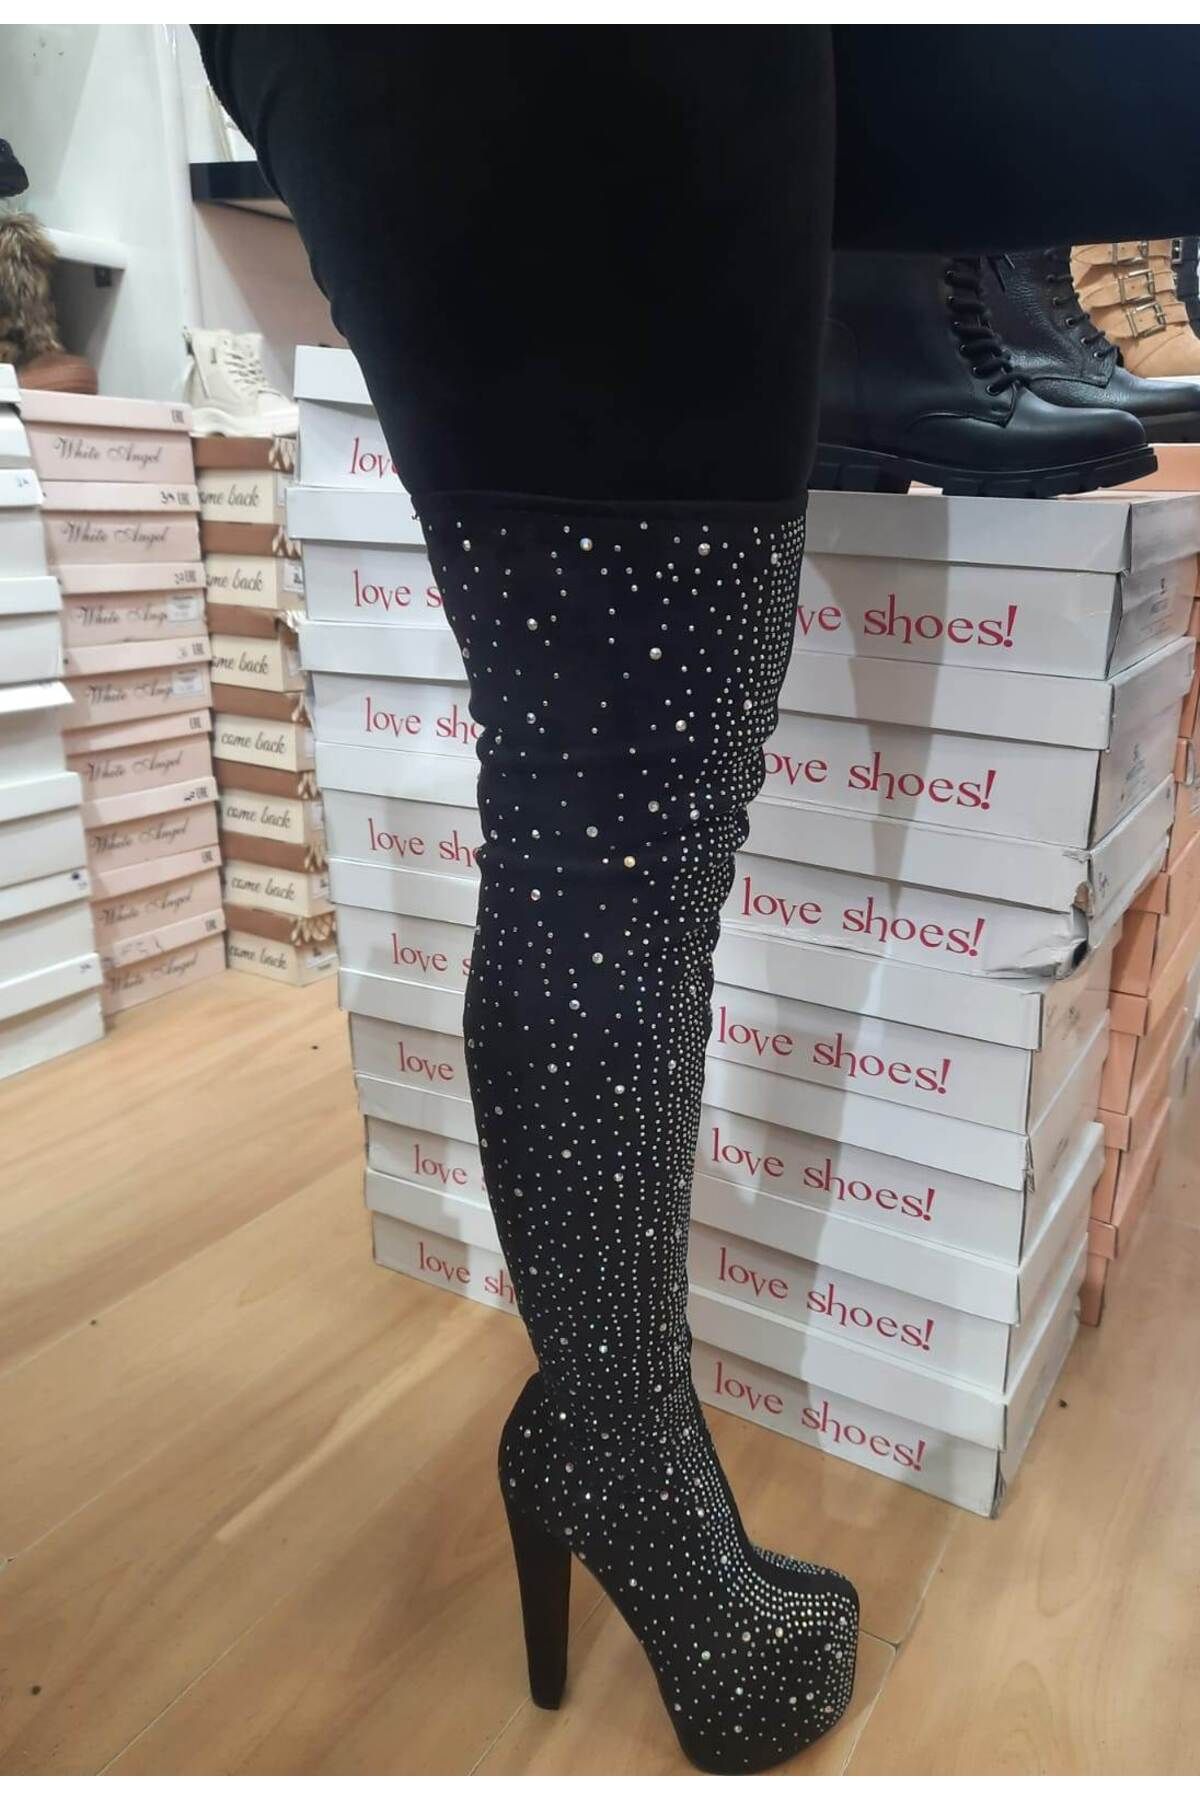 Afilli Kadın Siyah Yüksek Topuklu Parlak Çorap Esnek Abiye Diz Üstü Çizme Uzun Bot Ayakkabı